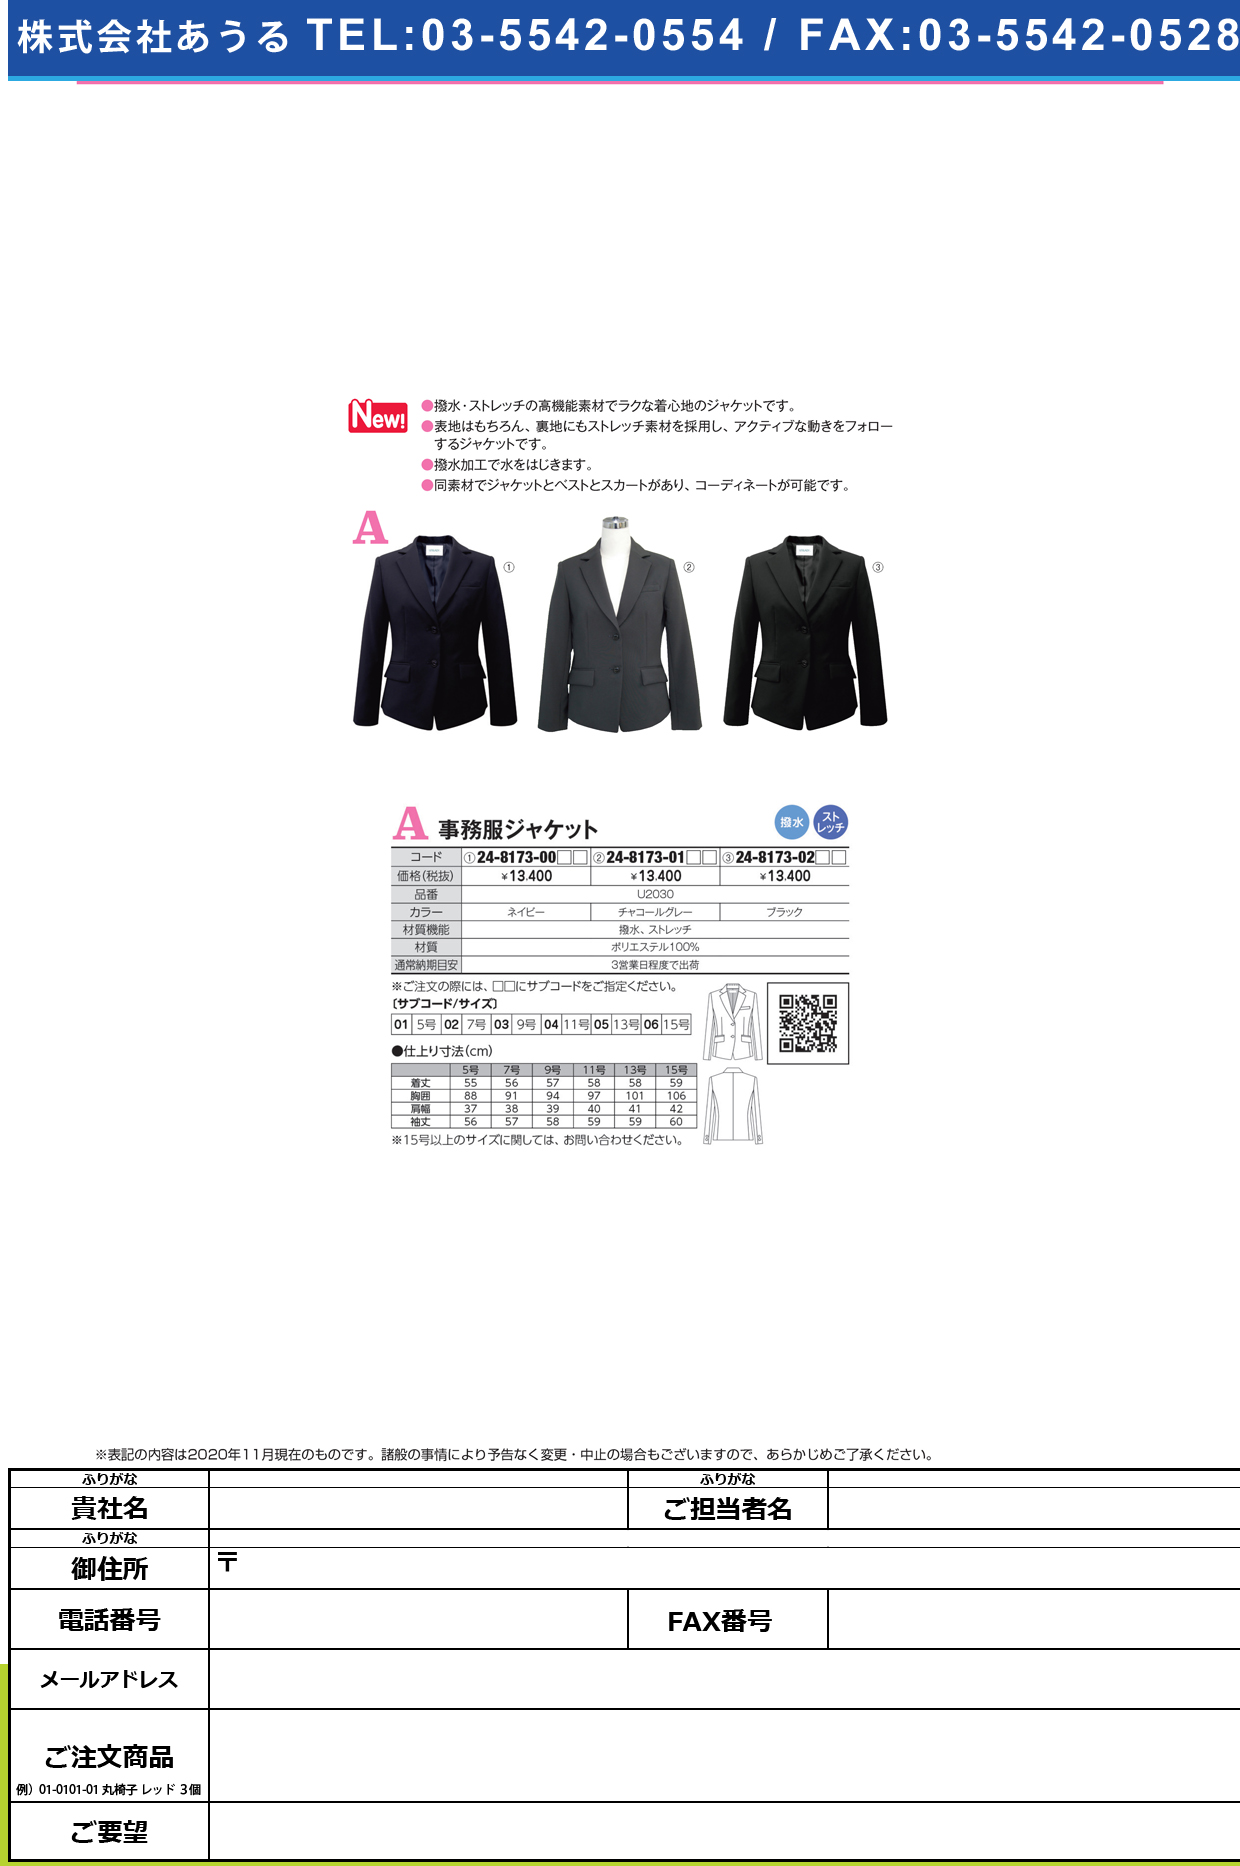 事務服ジャケット U2030(ブラック)U2030(ﾌﾞﾗｯｸ)５(24-8173-02-01)【ヤギコーポレーション】(販売単位:1)